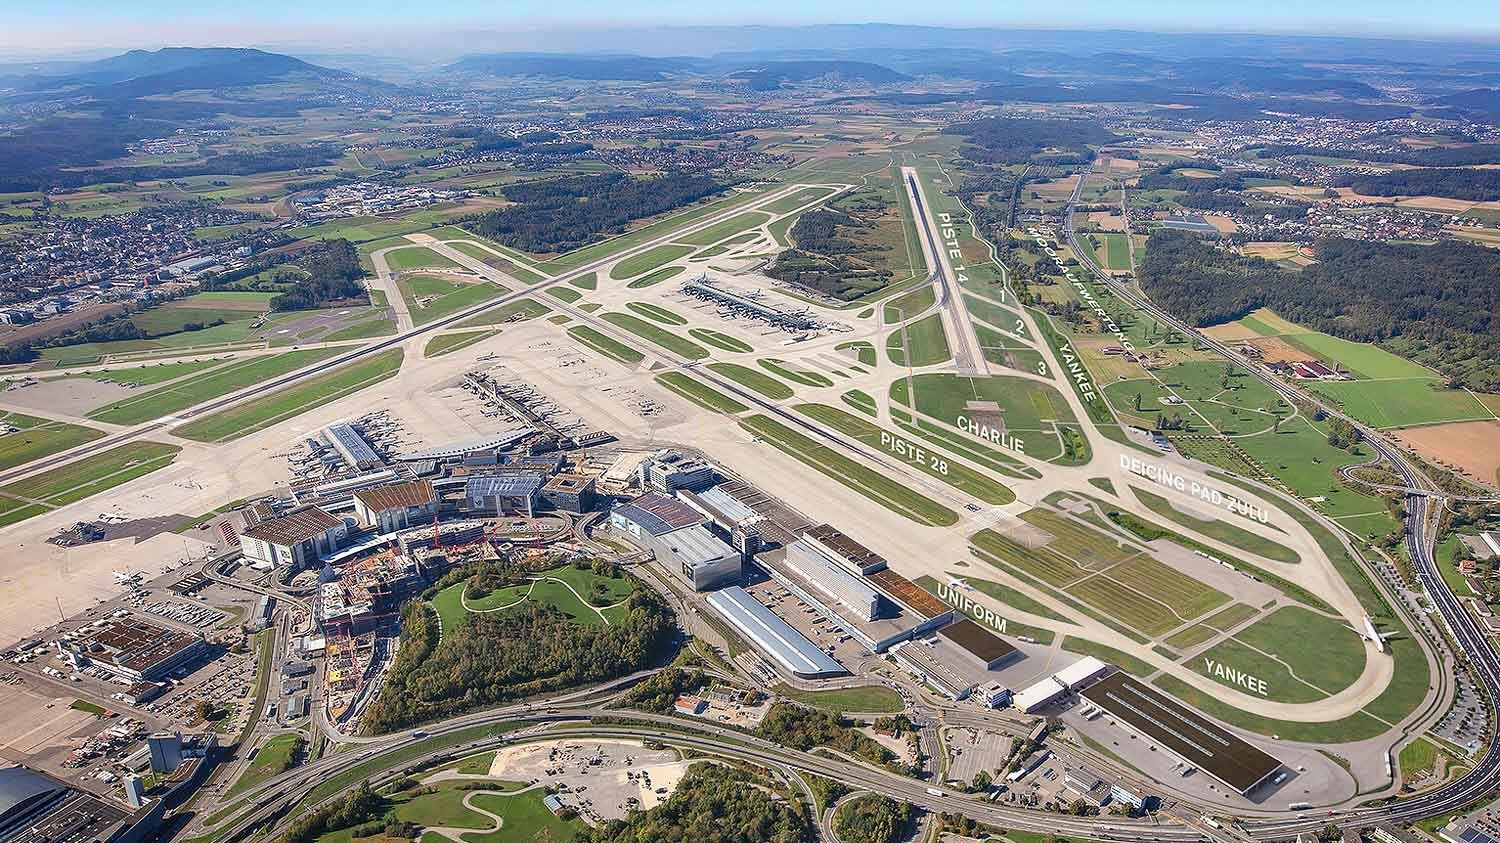 A partir de fin mars, la bande centrale de la piste 10/28 de l'aéroport de Zurich sera rénovée. Les travaux devraient se terminer durant la période d'été de cette année.